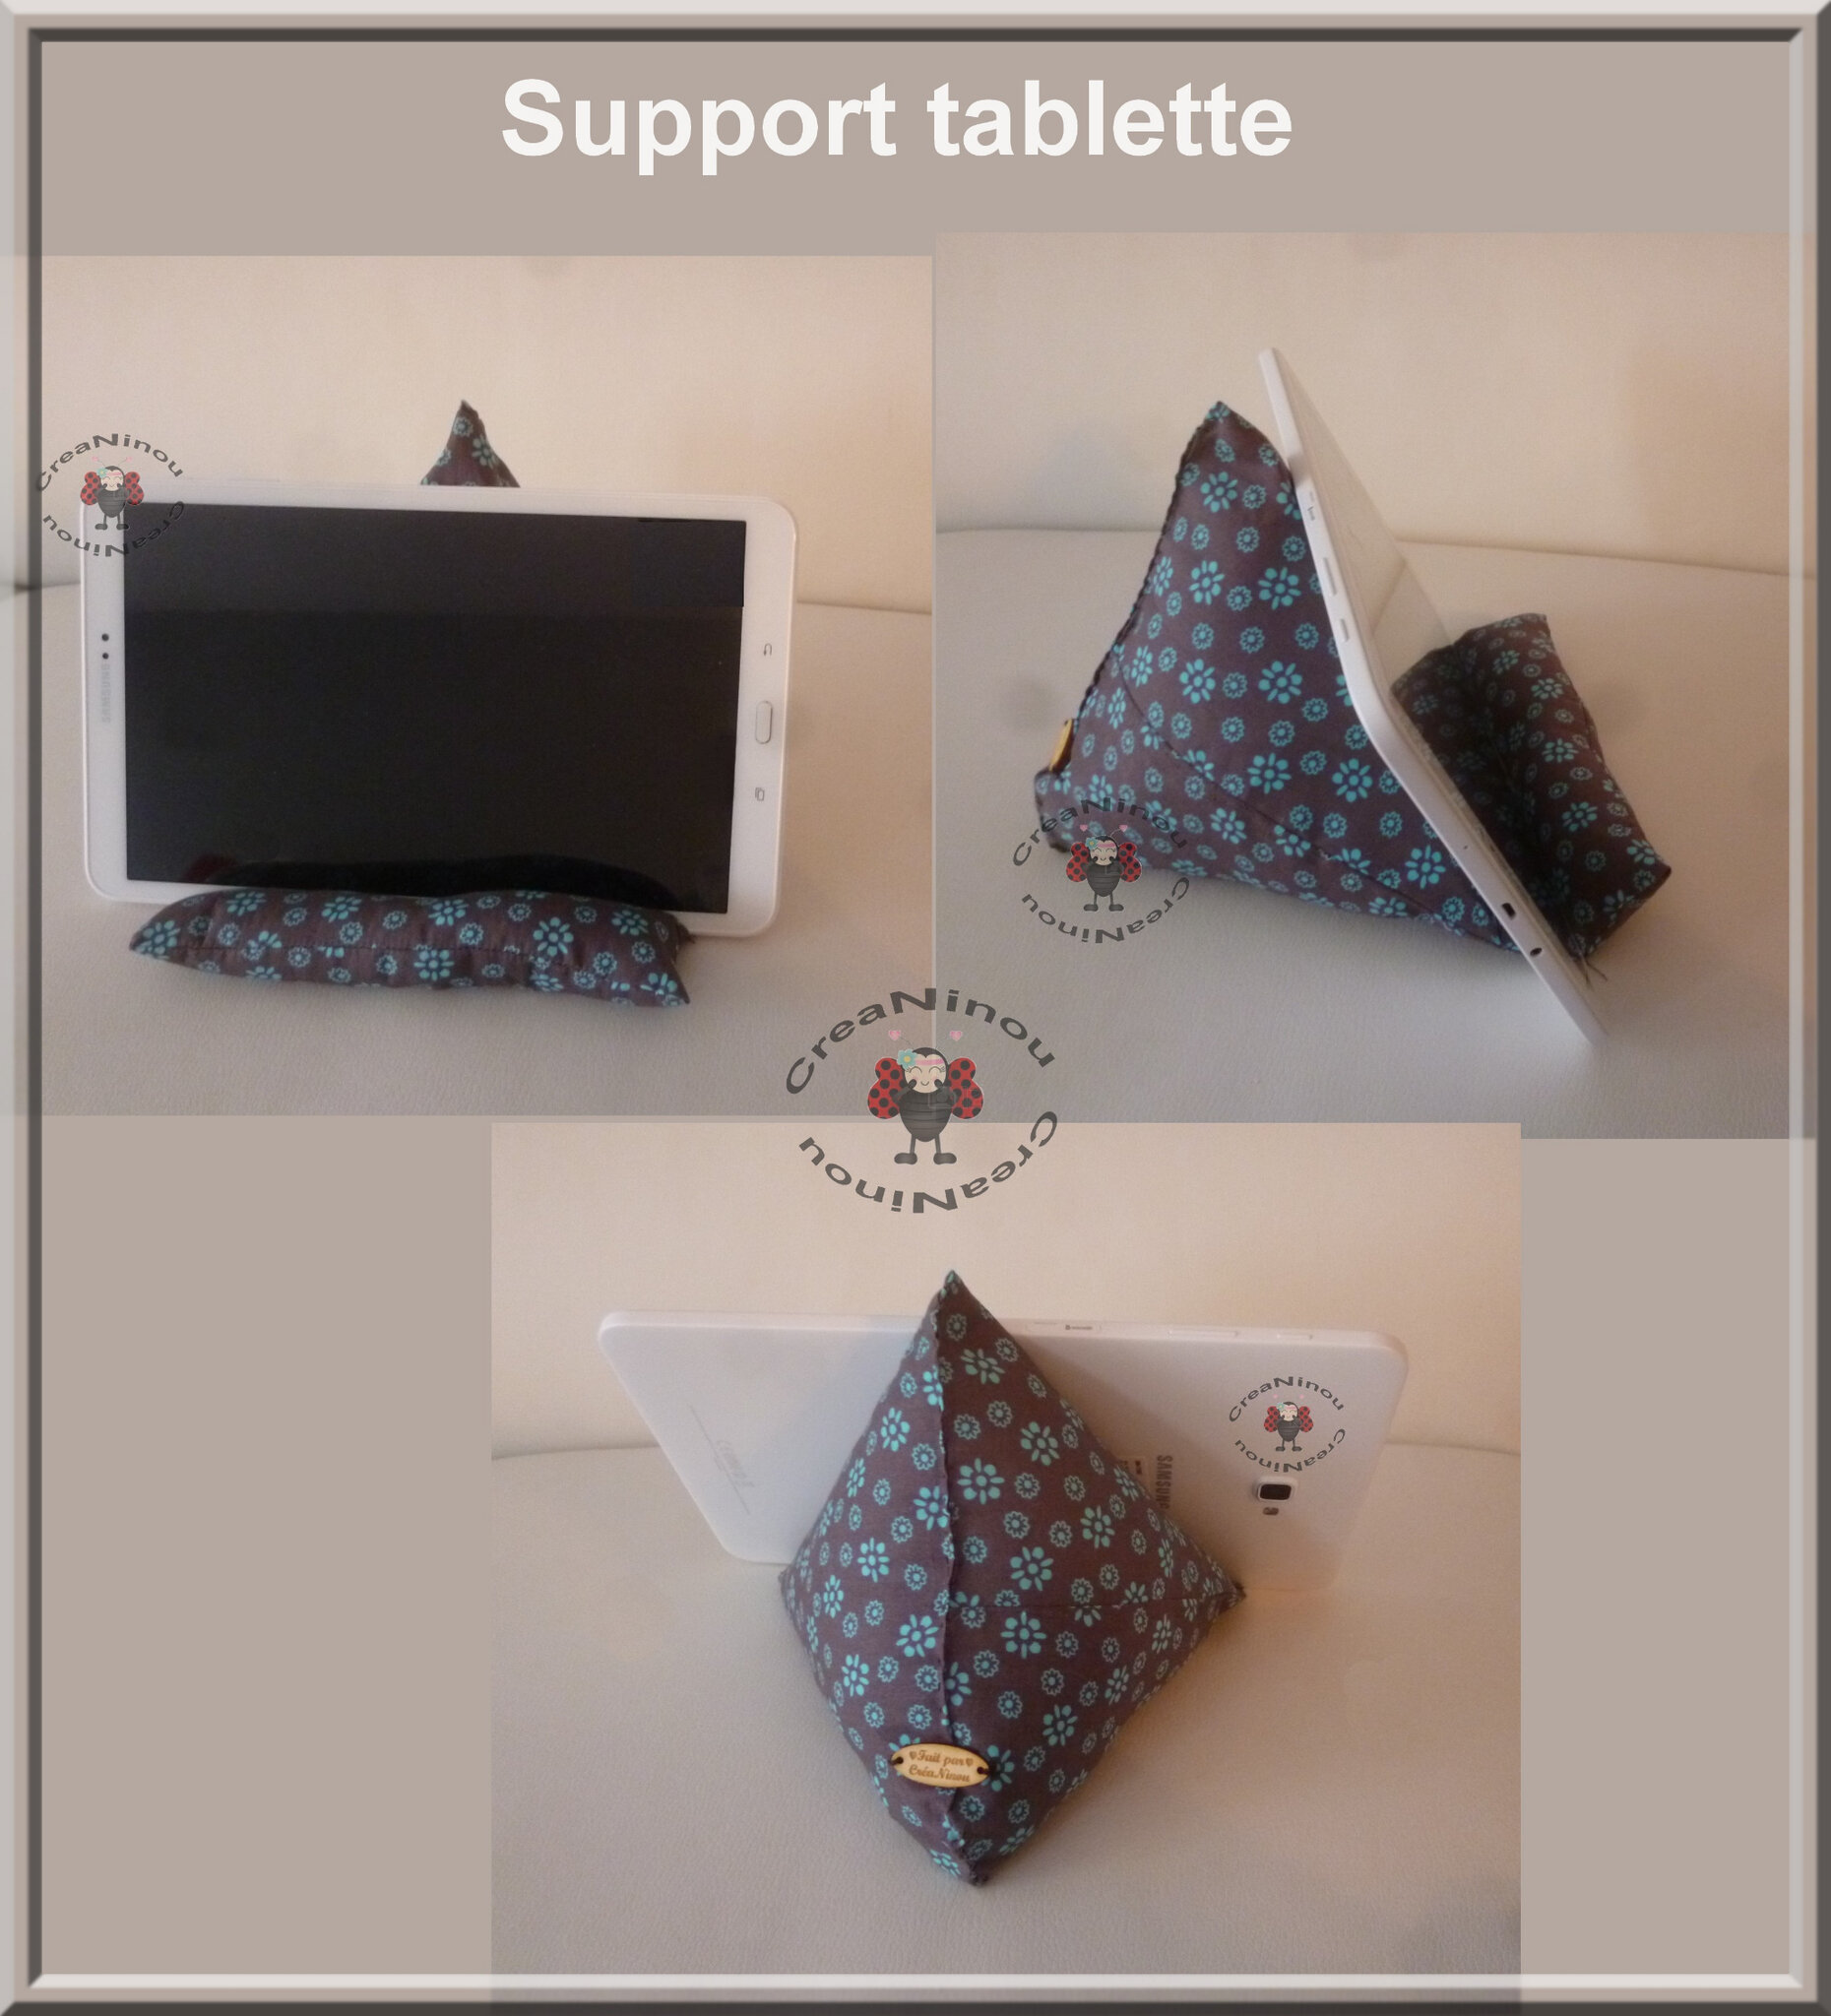 Support coussin pour tablette et smartphone - Pausecouture Creaninou